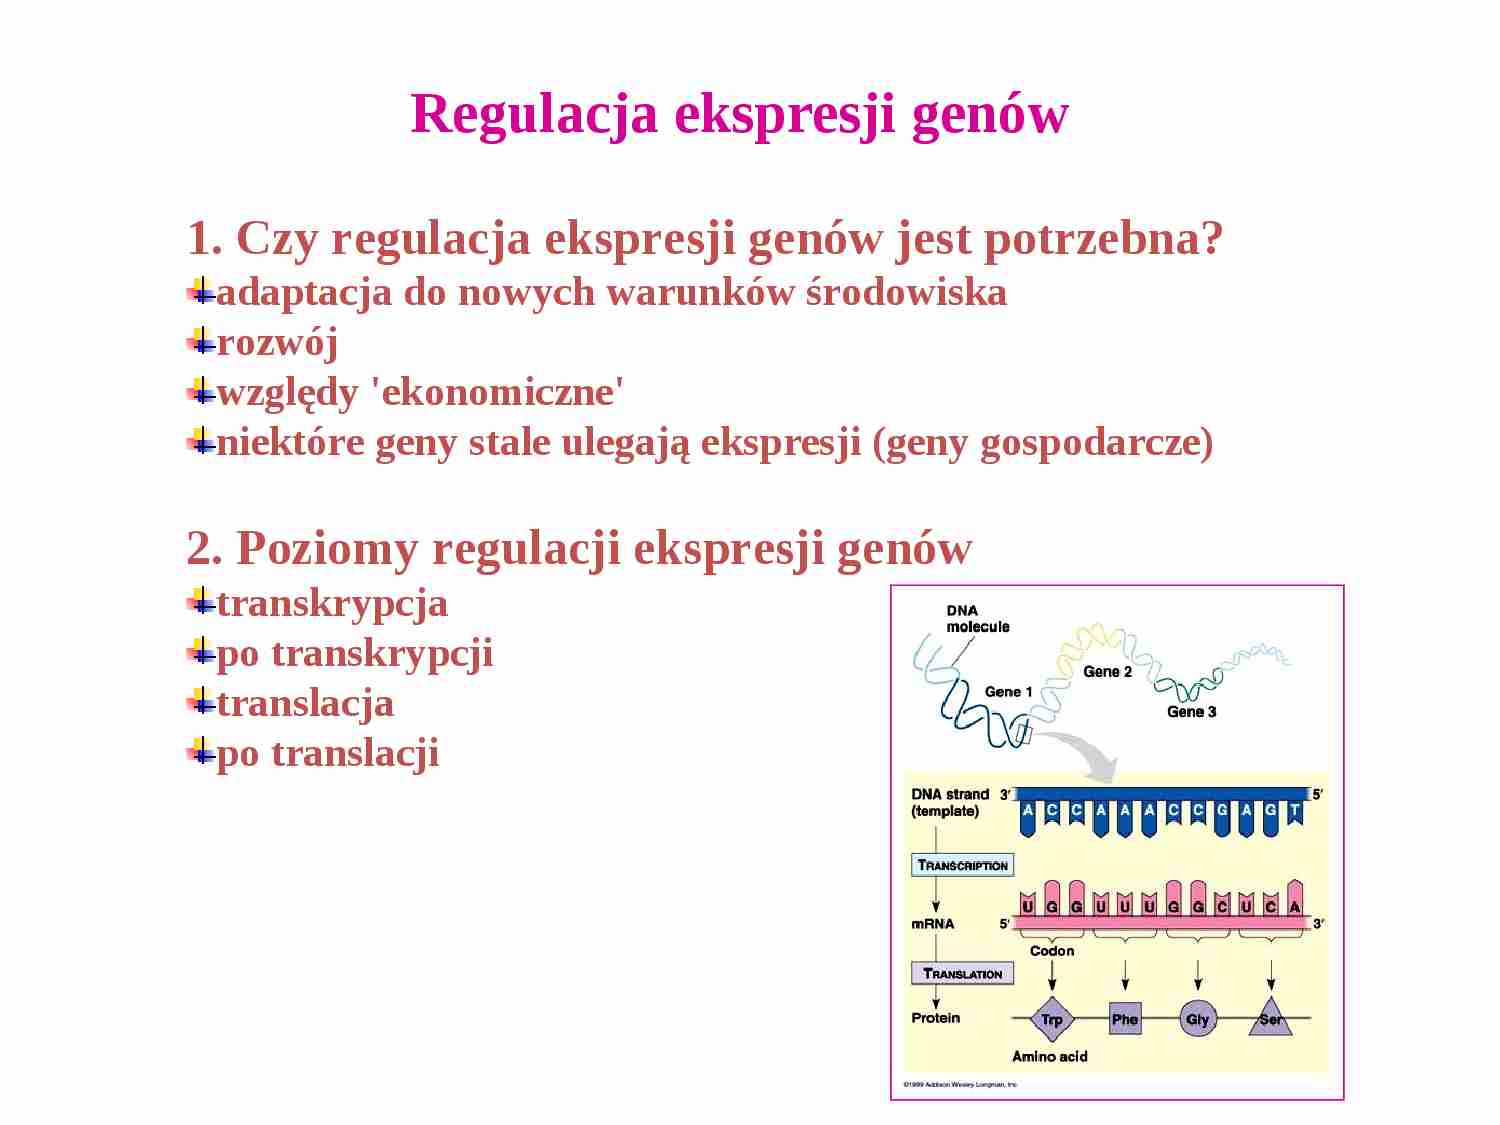 Regulacja ekspresji genów - strona 1